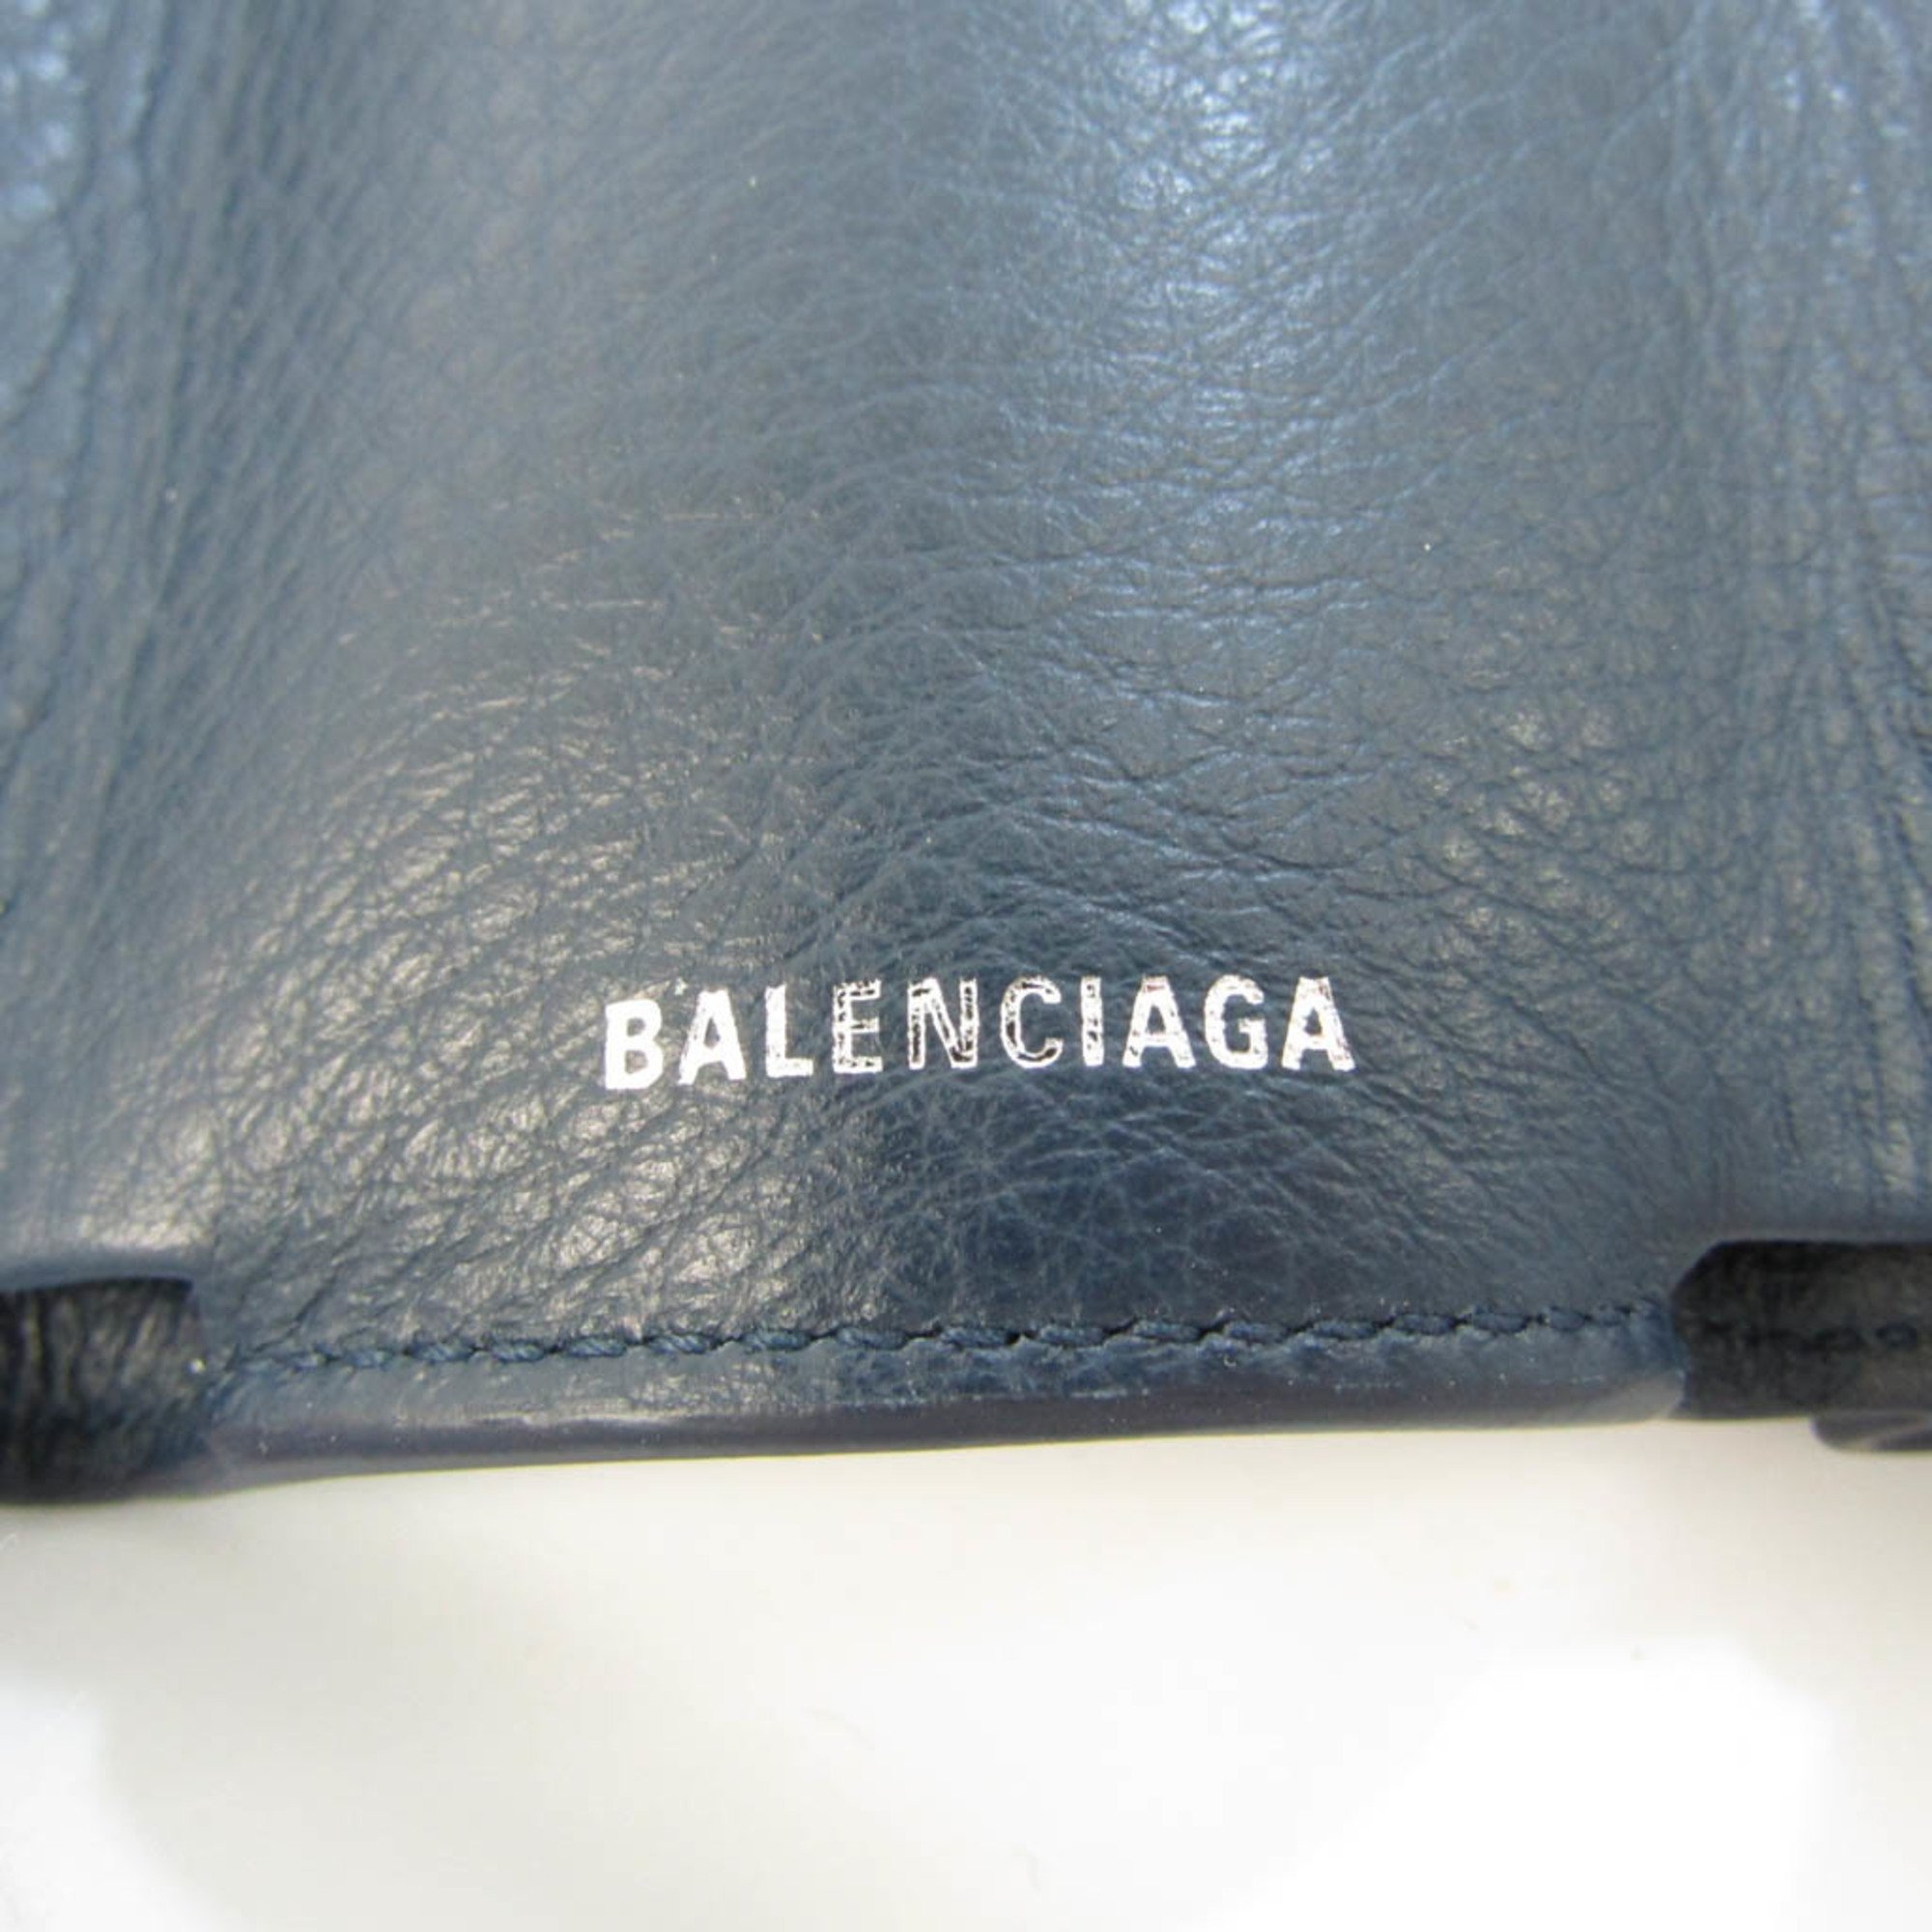 バレンシアガ(Balenciaga) ペーパー ミニウォレット 391446 レディース レザー 財布（三つ折り） ネイビー